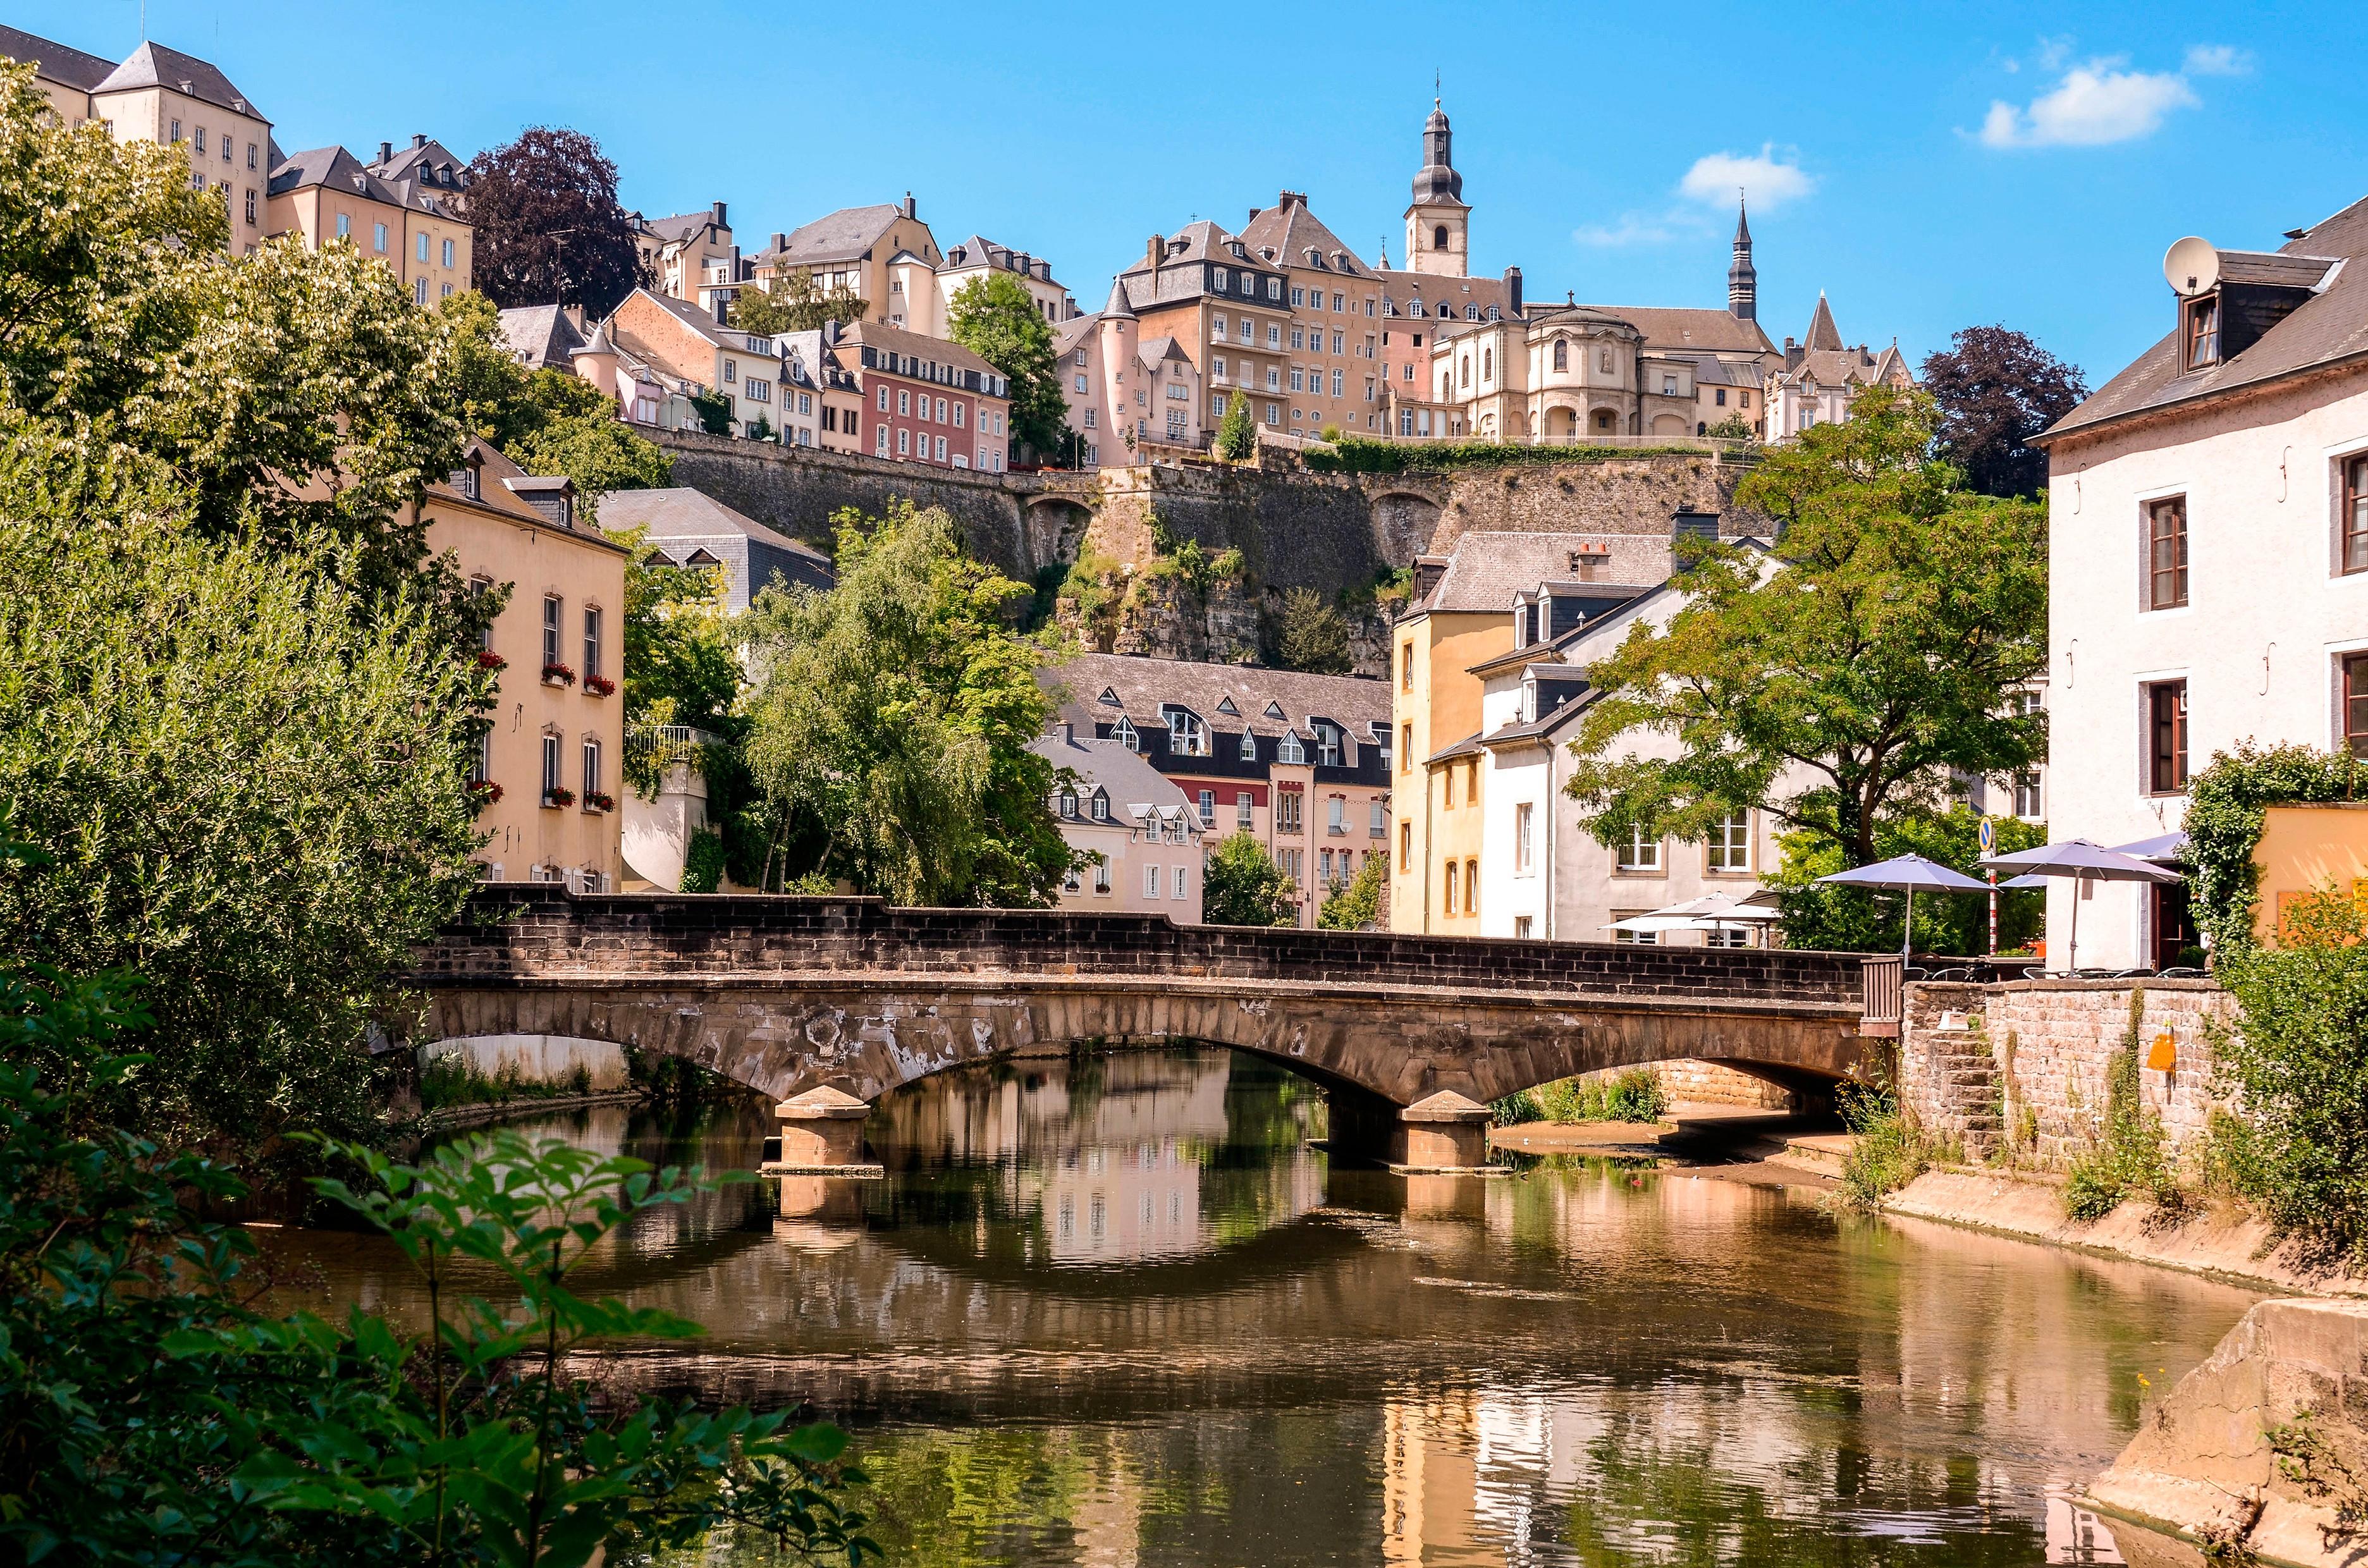 Luxemburg Stadt, Hauptstadt von Luxemburg.